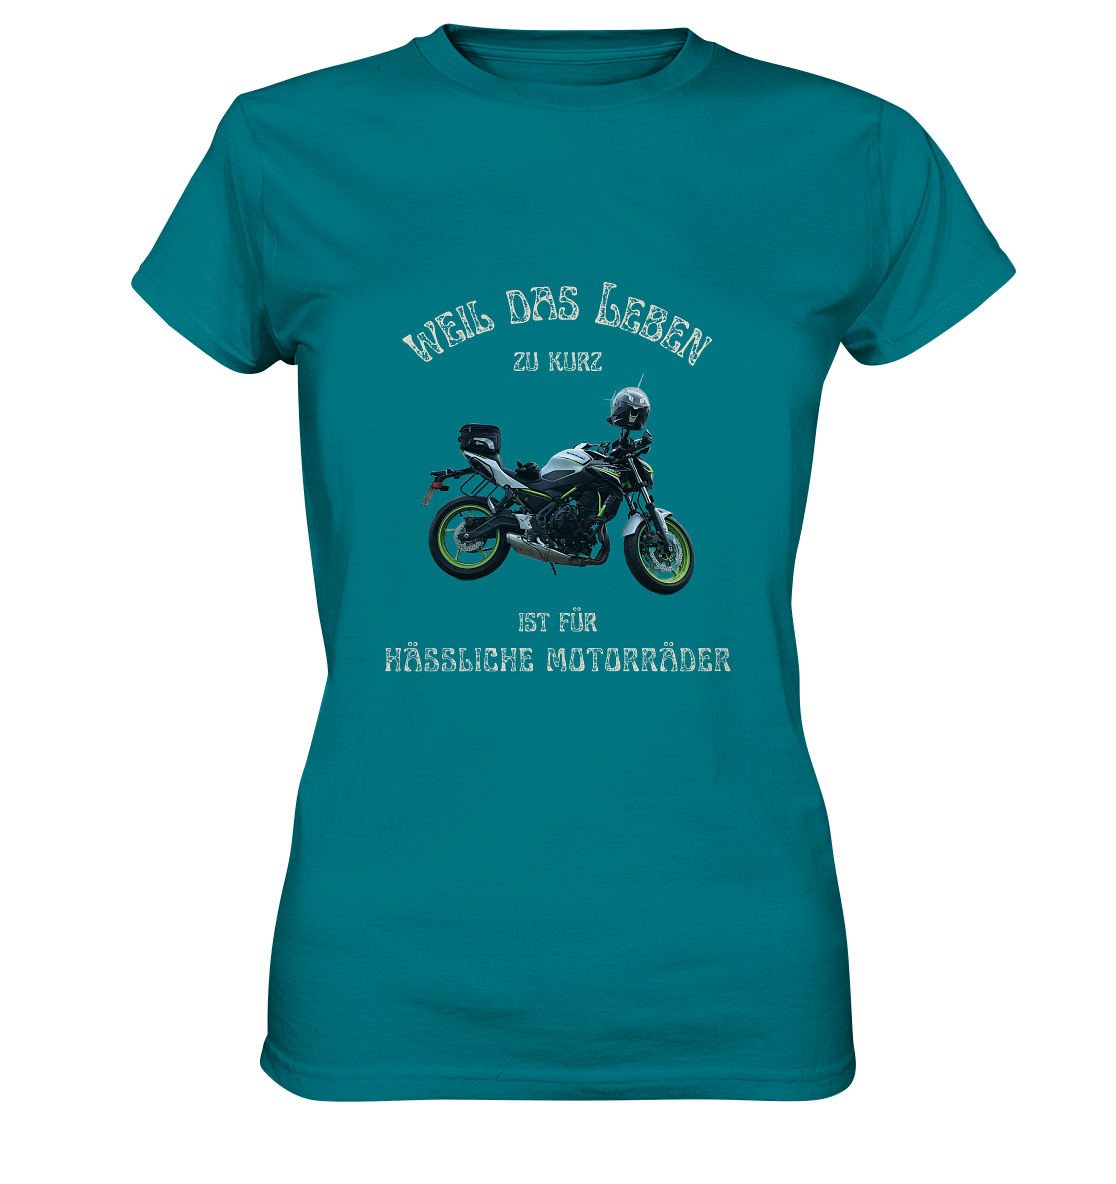 "Weil das Leben zu kurz ist für hässliche Motorräder" _ für Angelika | individualisiertes Damen-Shirt mit Motorrad-Foto und Spruch in hellem Design